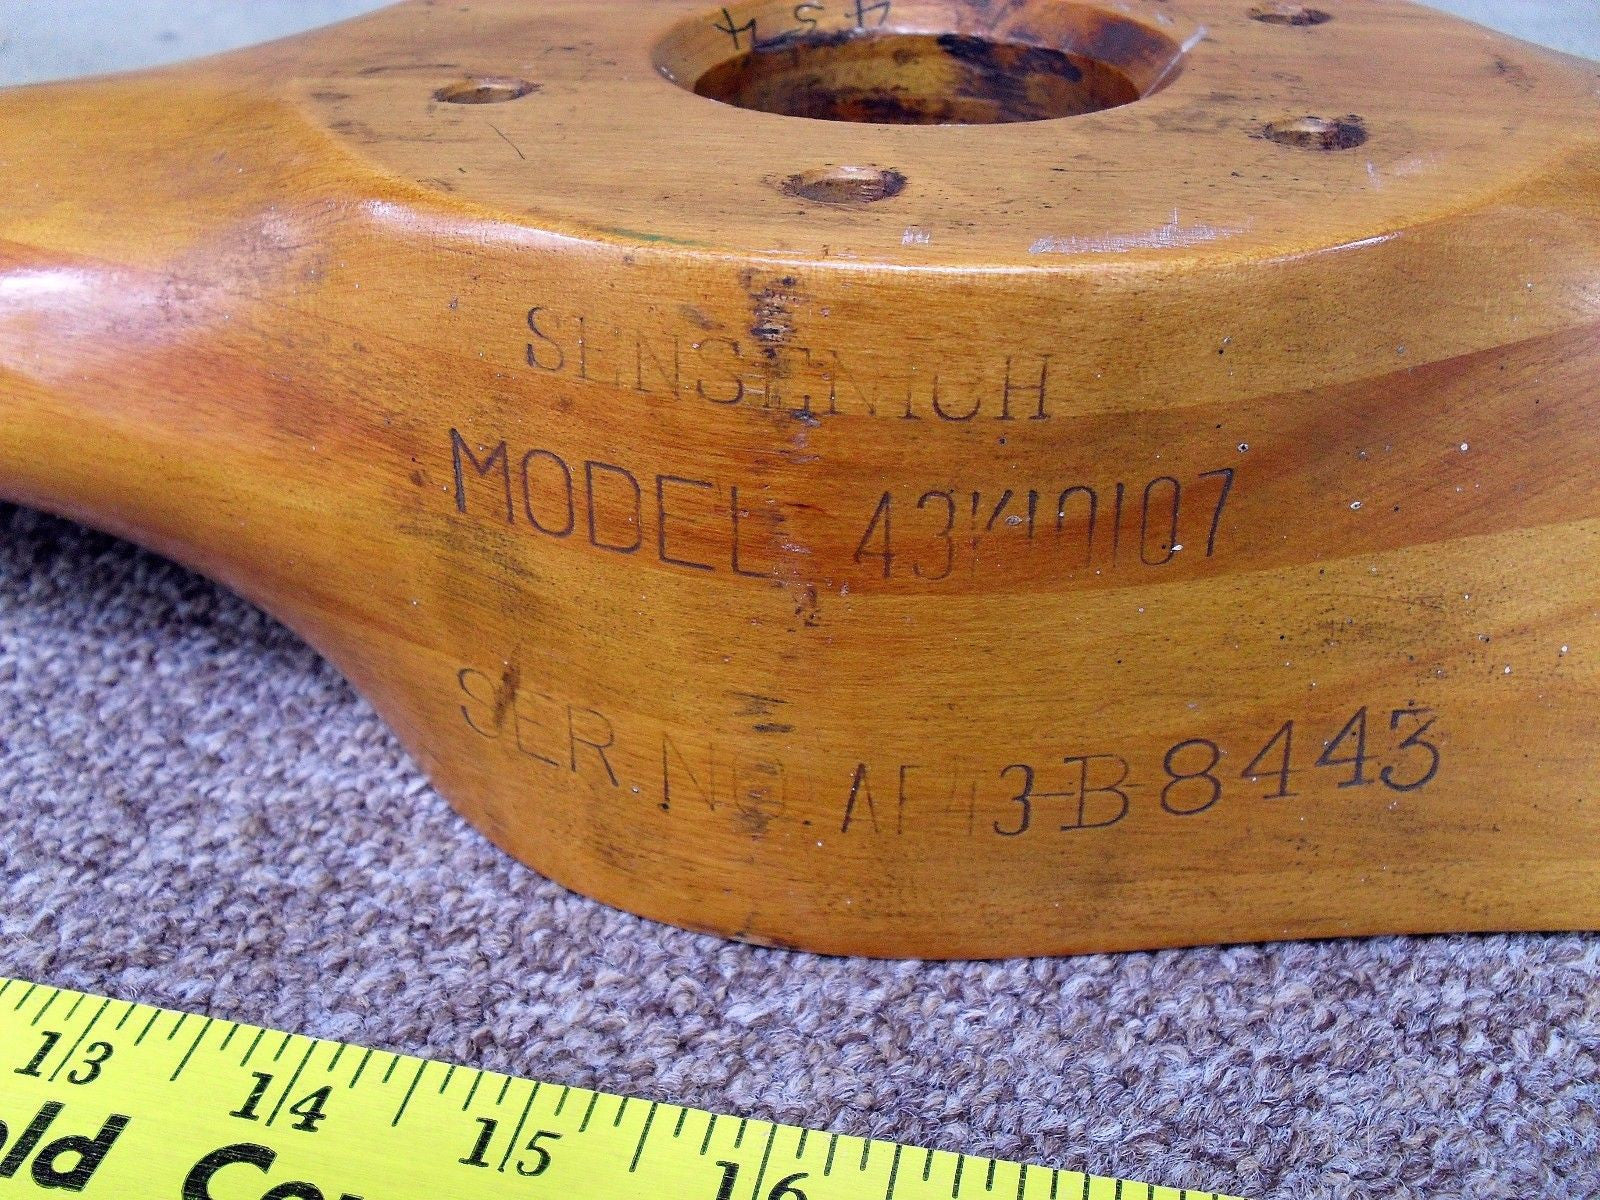 sensenich wood propeller serial numbers